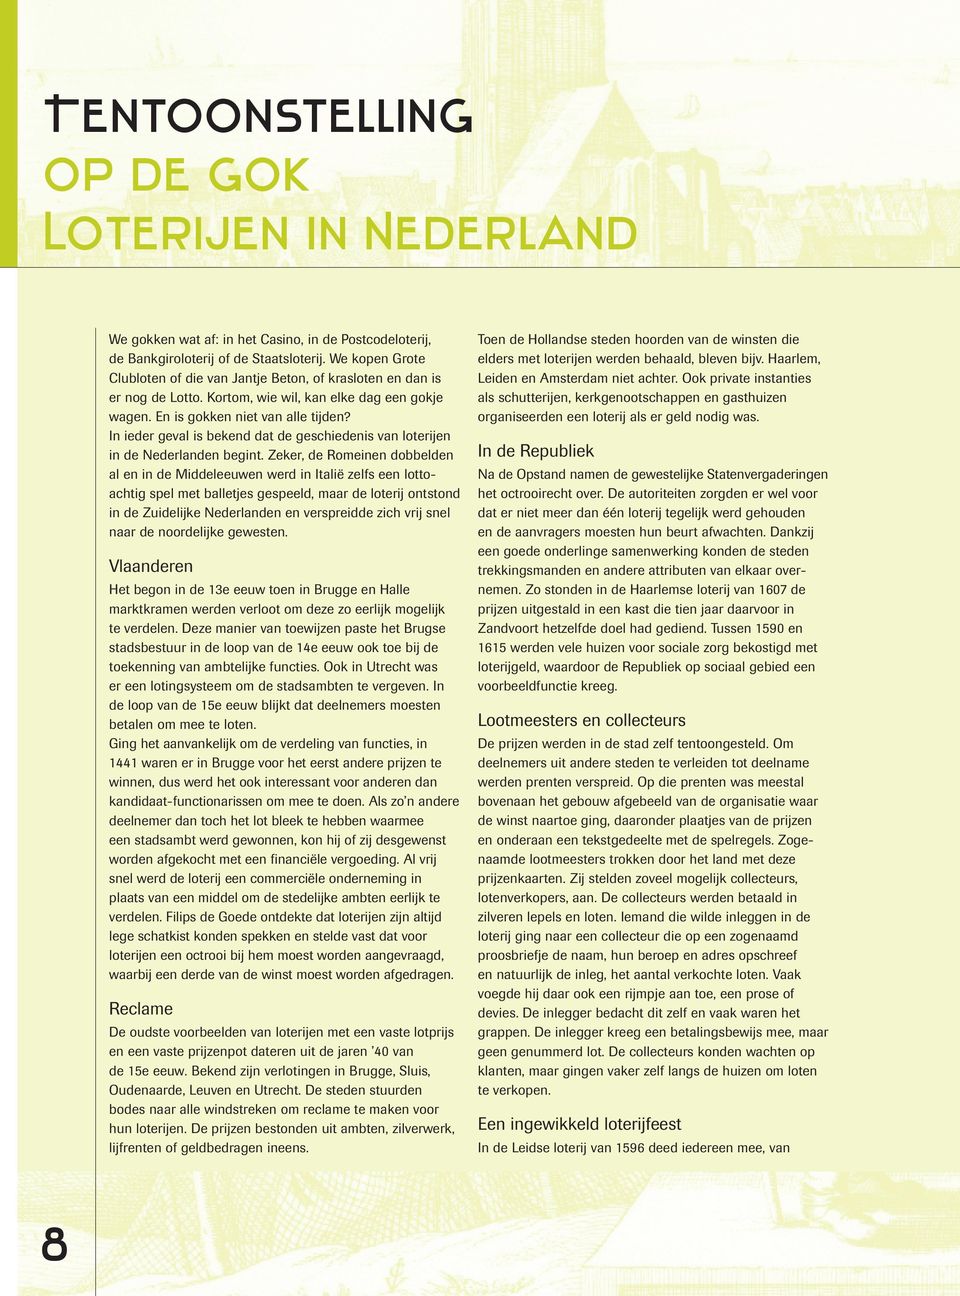 In ieder geval is bekend dat de geschiedenis van loterijen in de Nederlanden begint.